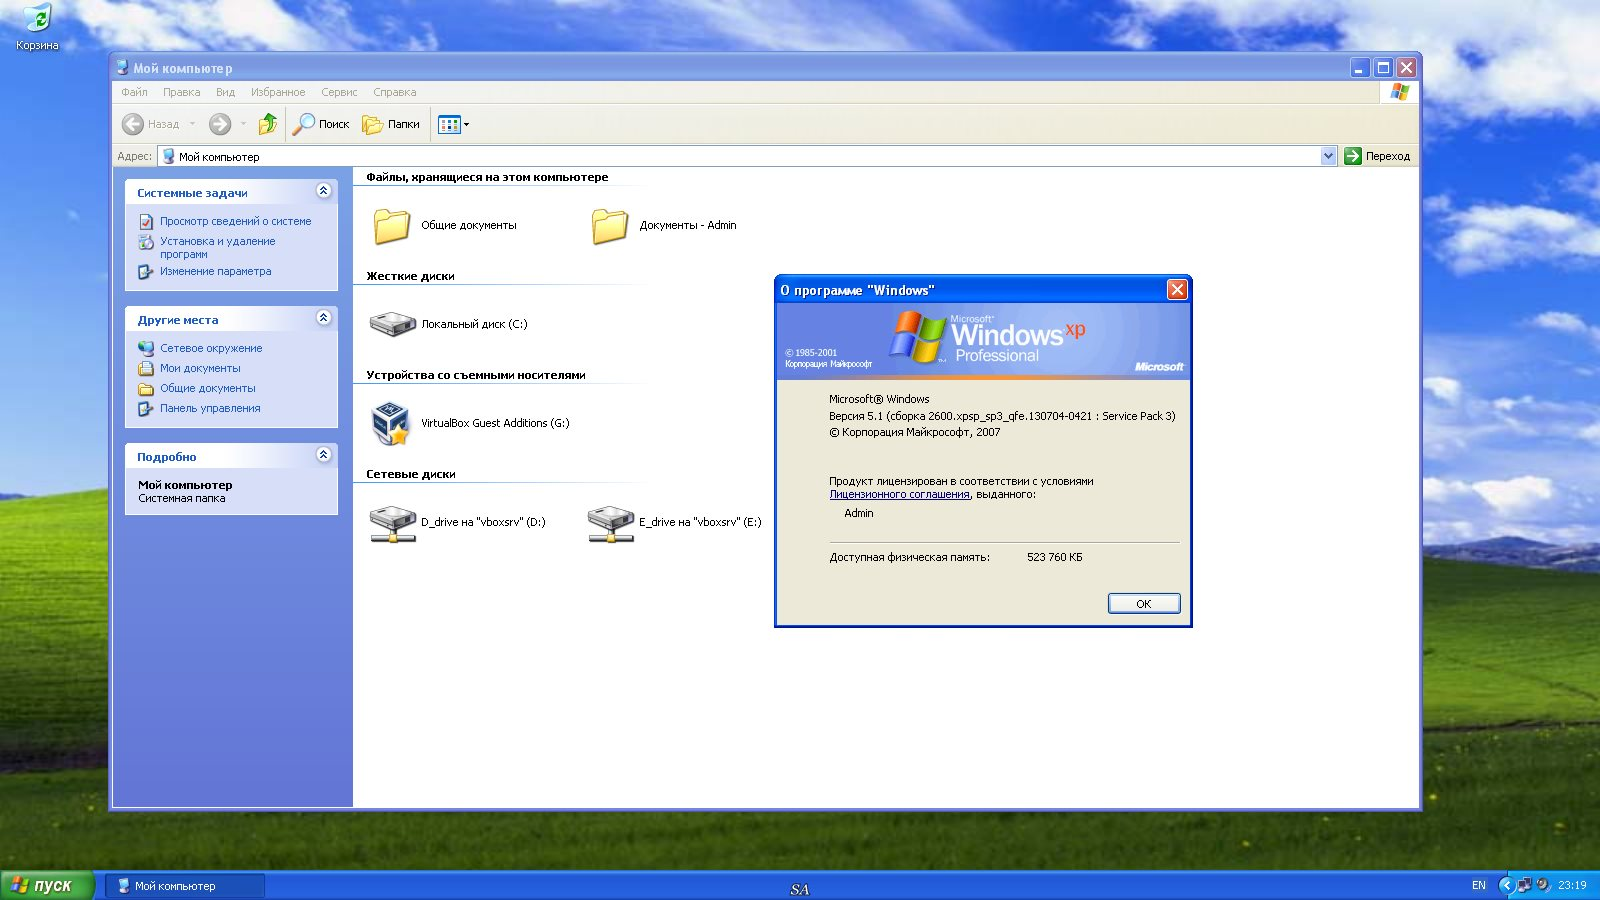 Опции windows. Виндовс хр Интерфейс. ОС виндовс хр. Пользовательский Интерфейс виндовс хр. Окно Windows XP.